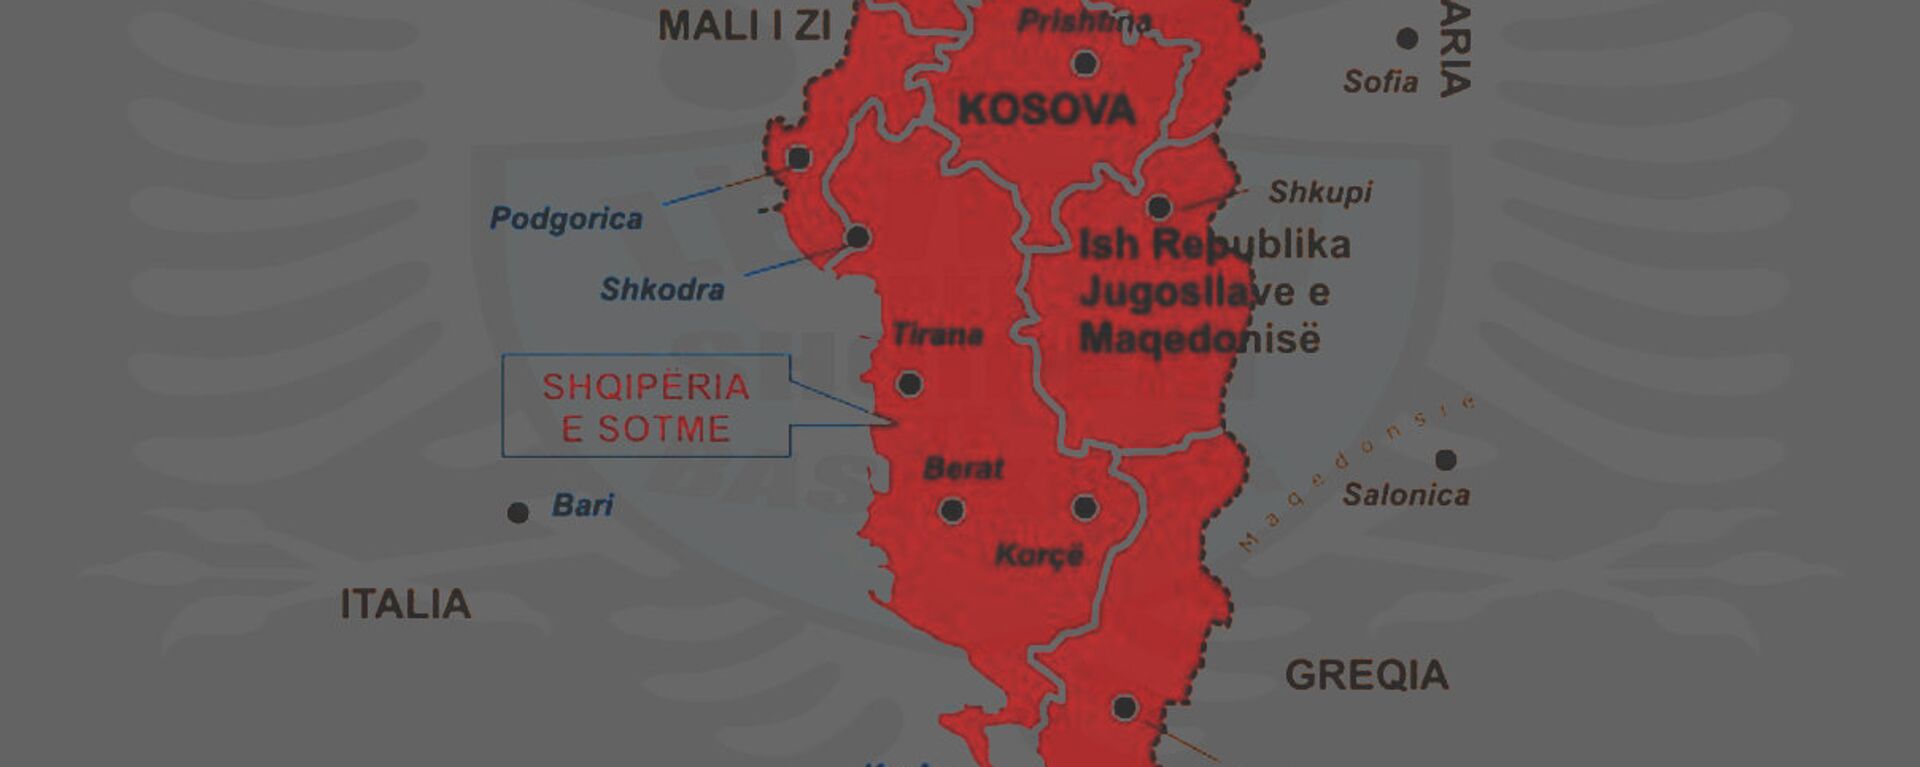 Karta Velike Albanije - Sputnik Srbija, 1920, 11.10.2021